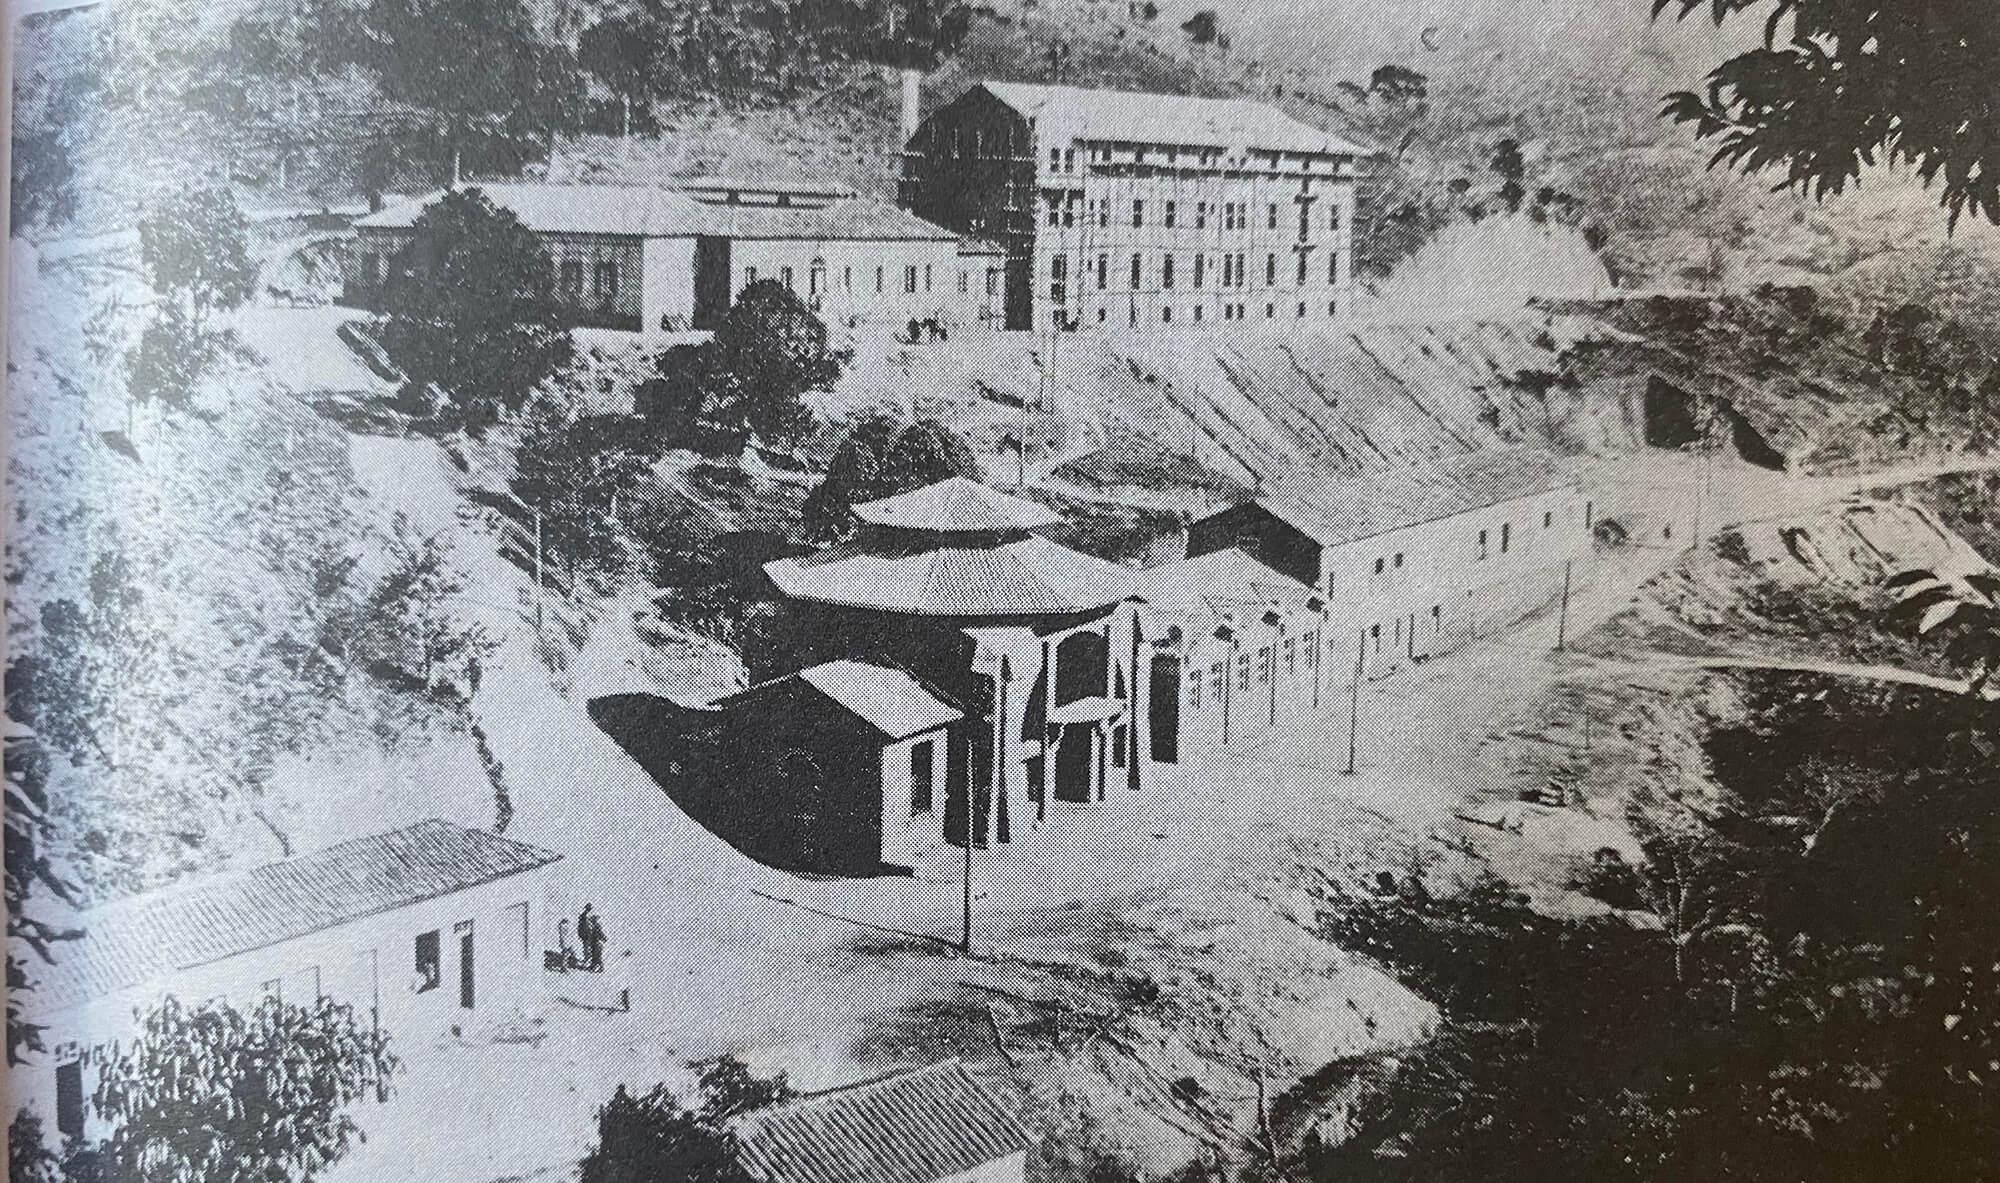 Vista da construção das Thermas de Lindoya - 20 setembro 1924 - Águas de Lindóia SP